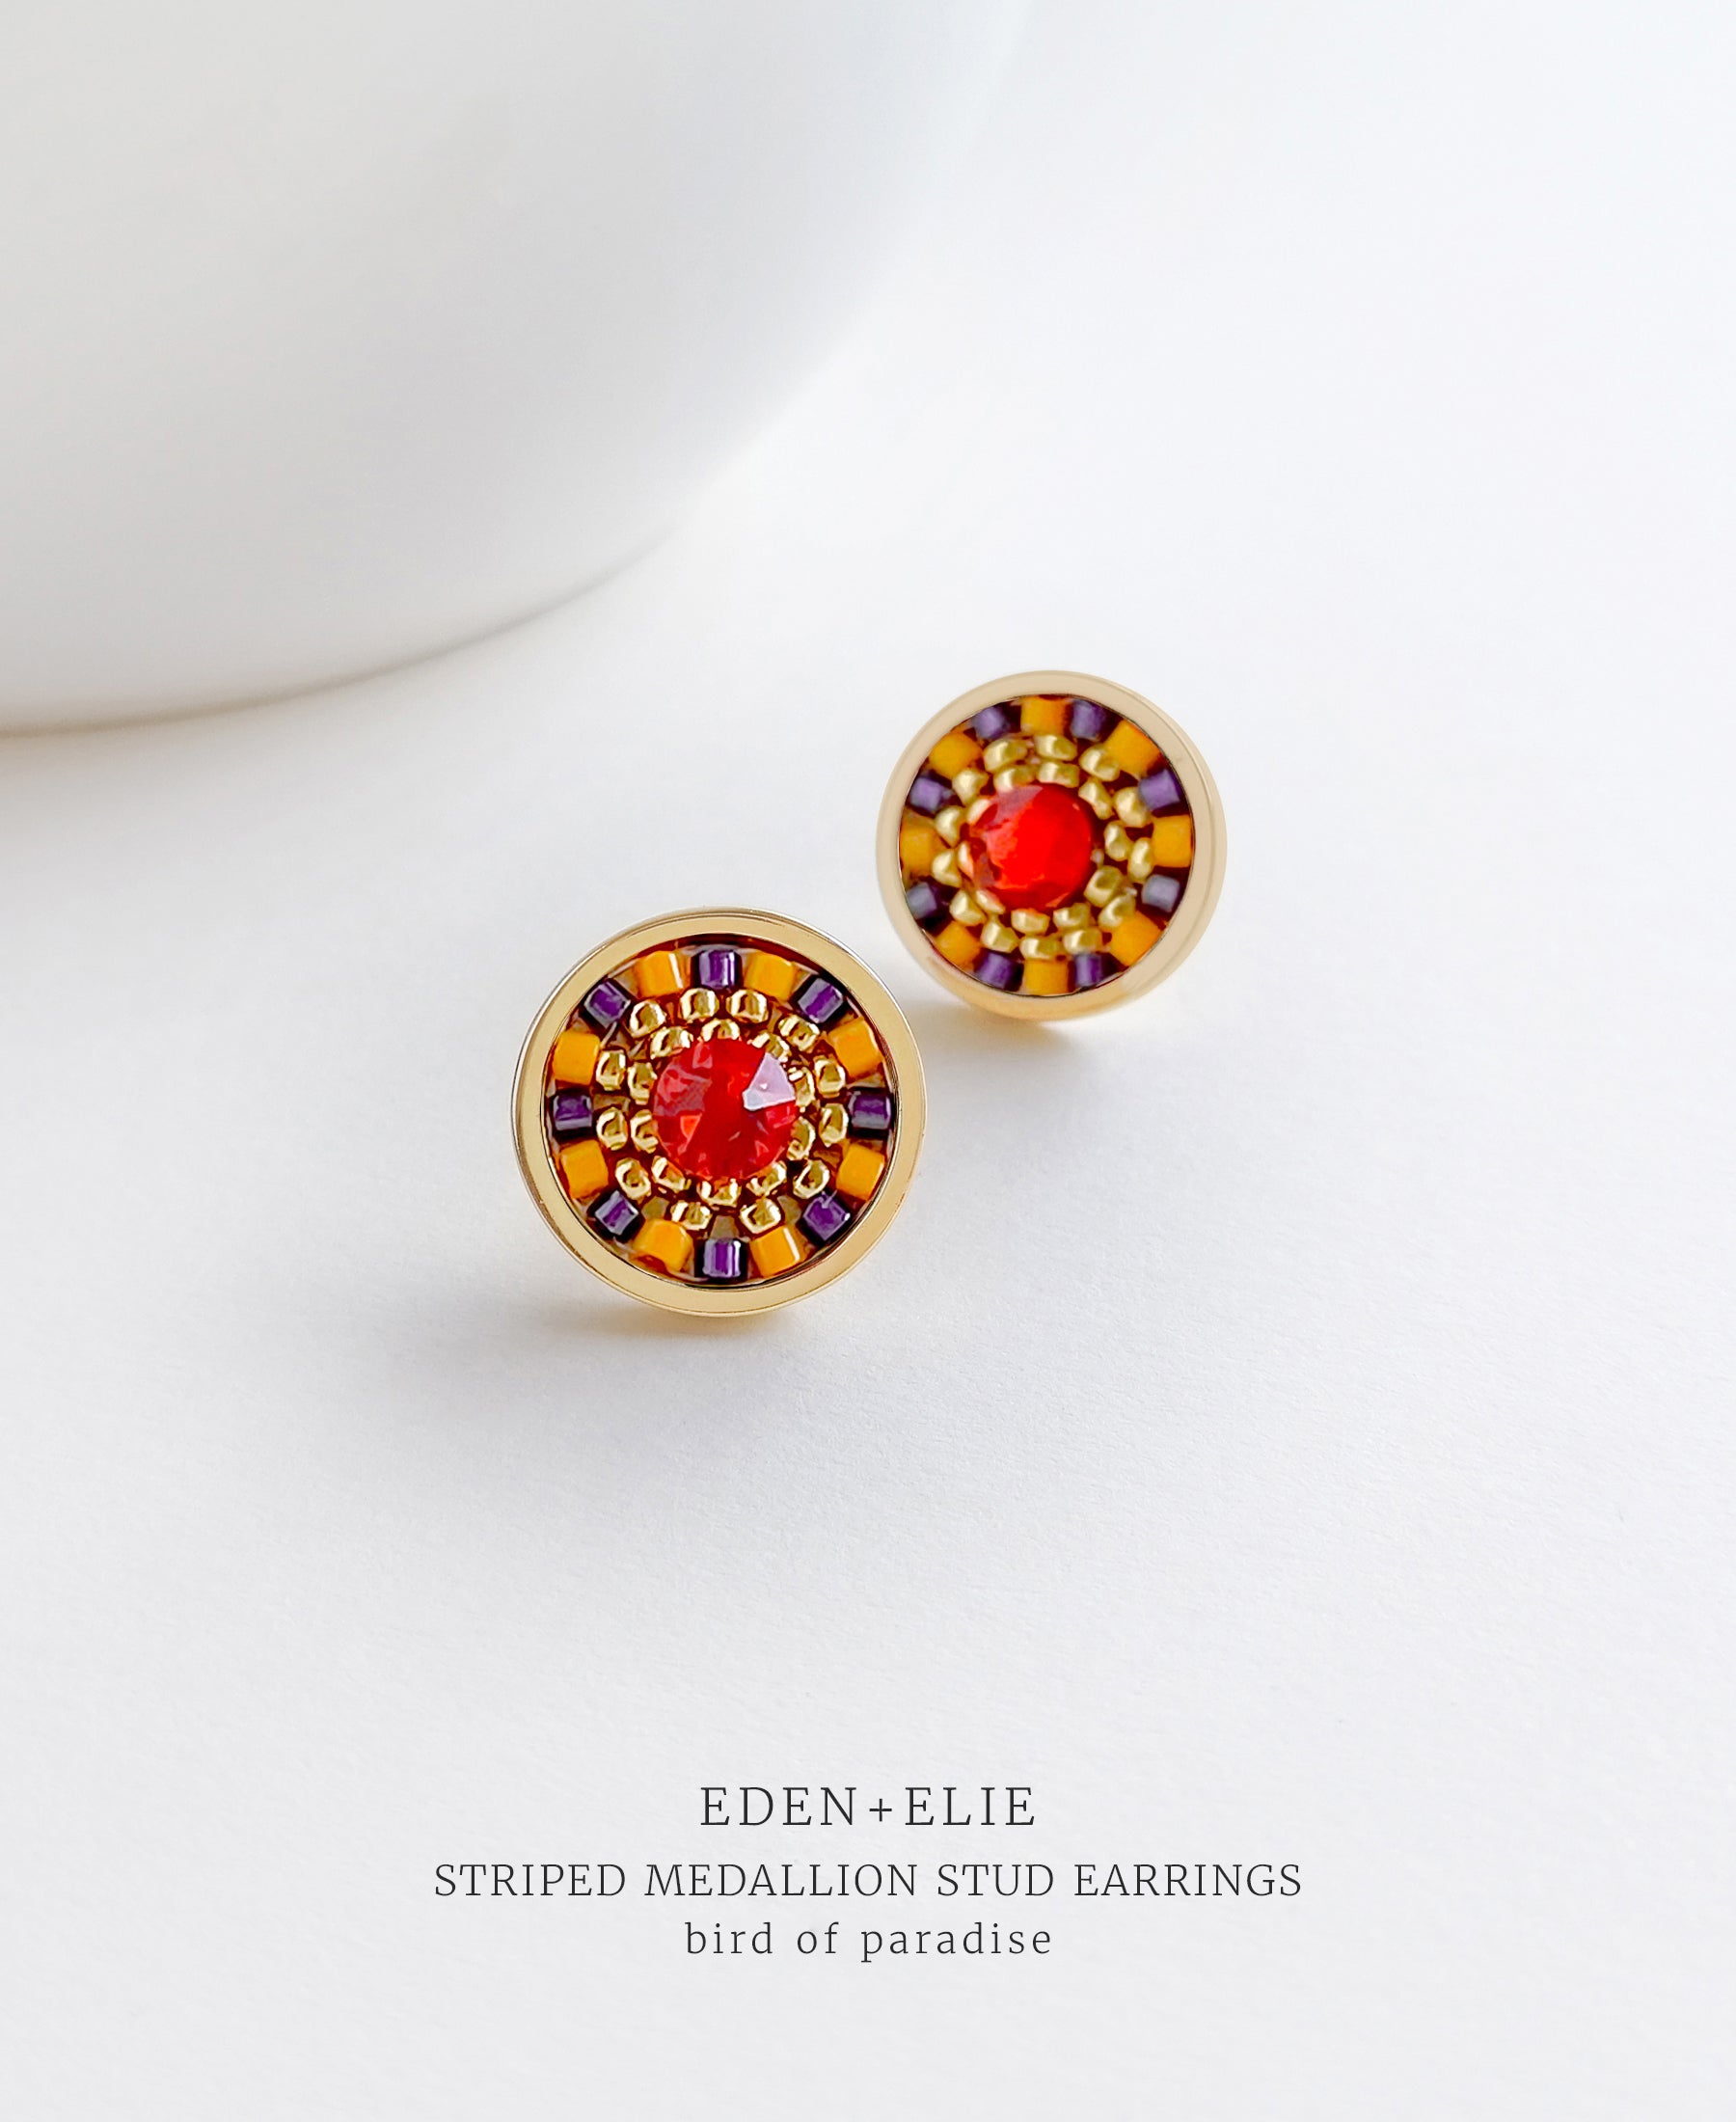 EDEN + ELIE Striped Medallion stud earrings - Bird of Paradise